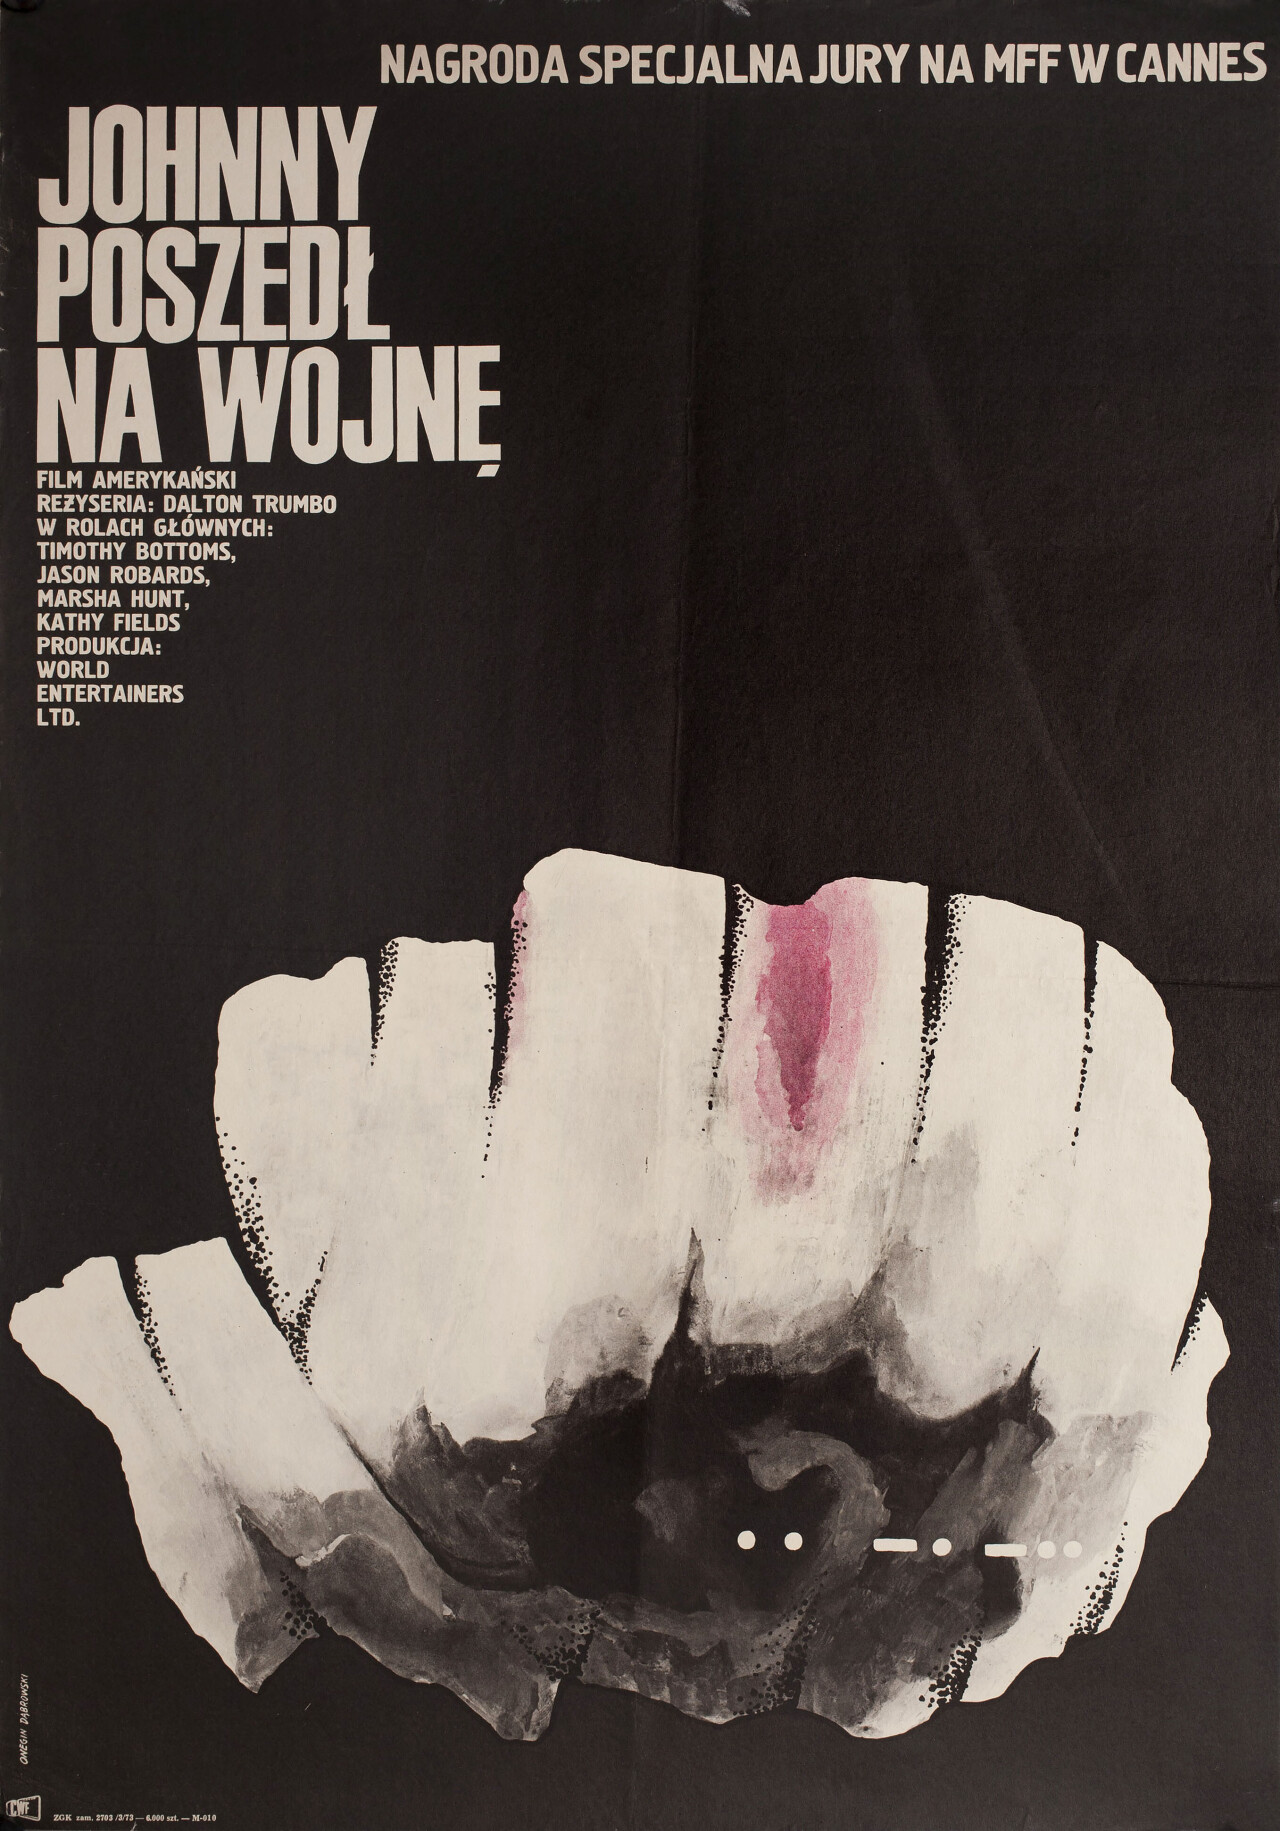 Джонни взял ружьё (Johnny Got His Gun, 1971), режиссёр Далтон Трамбо, минималистичный постер к фильму (Польша, 1971 год), автор Анджей Онегин-Добровский